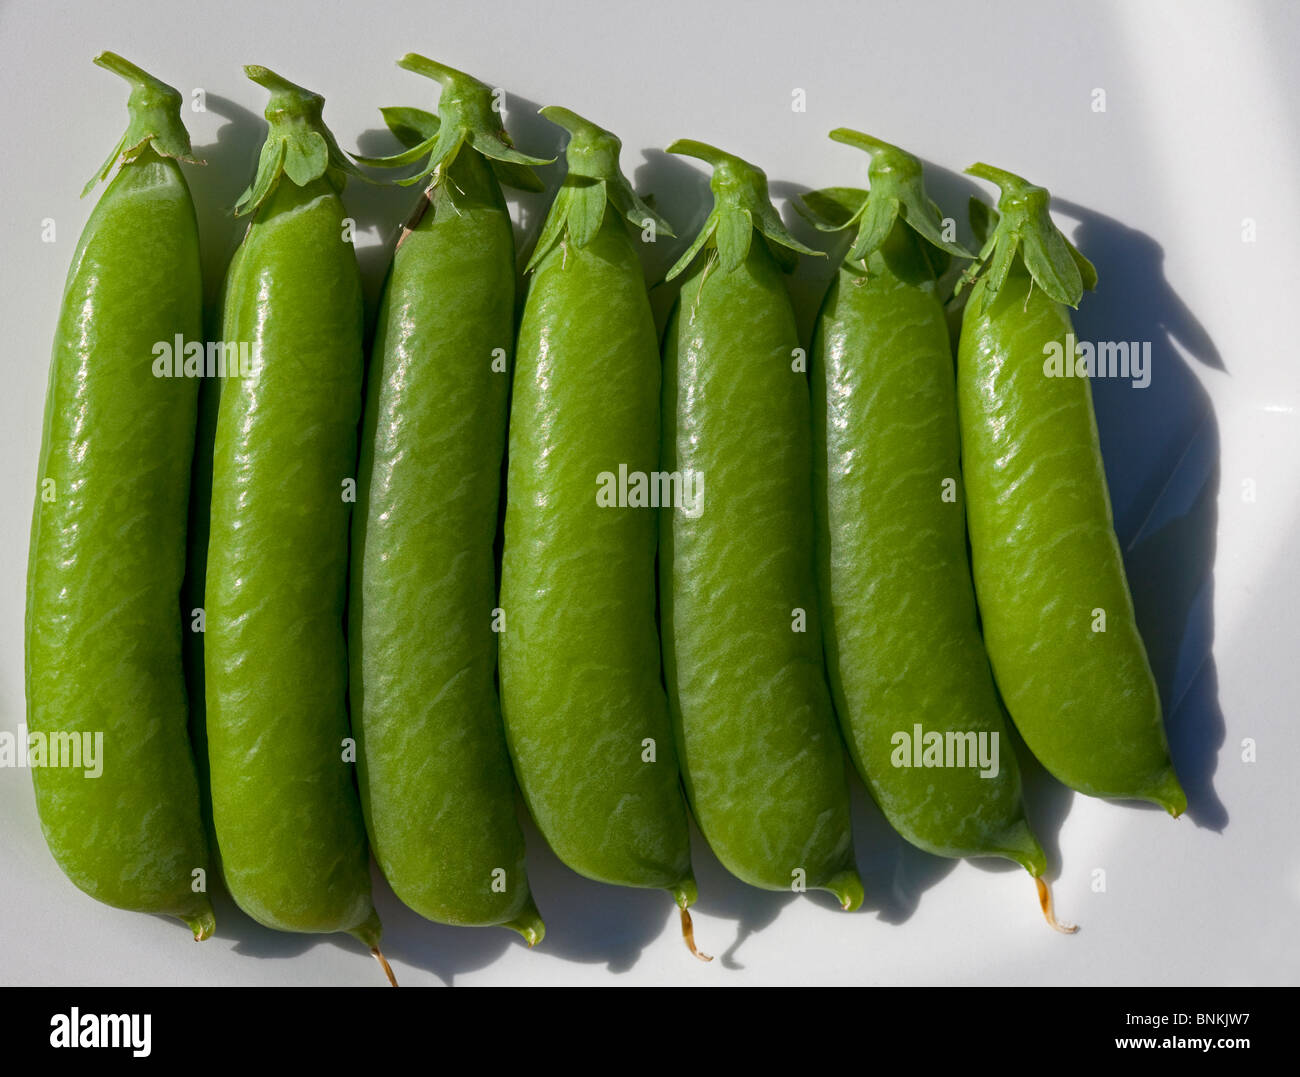 Siete nuevas vainas de guisantes verdes maduras en una placa blanca. Foto de stock